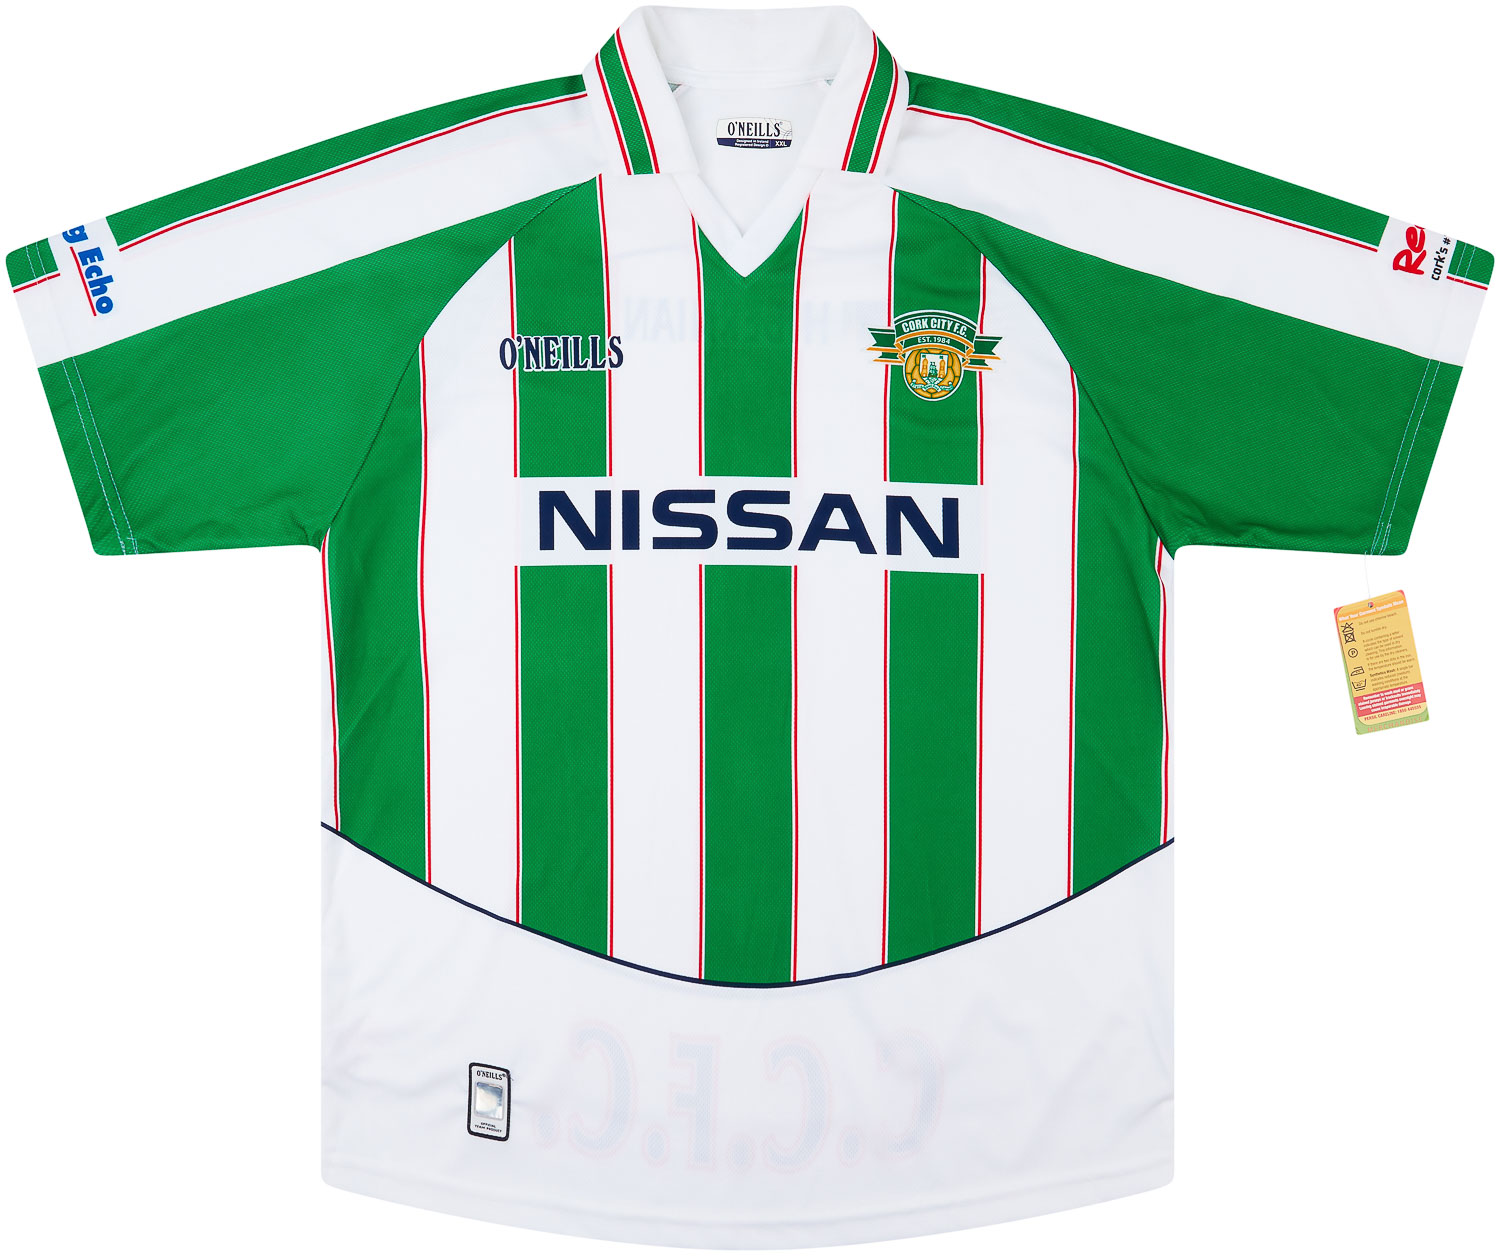 2005-06 Cork City Home Shirt